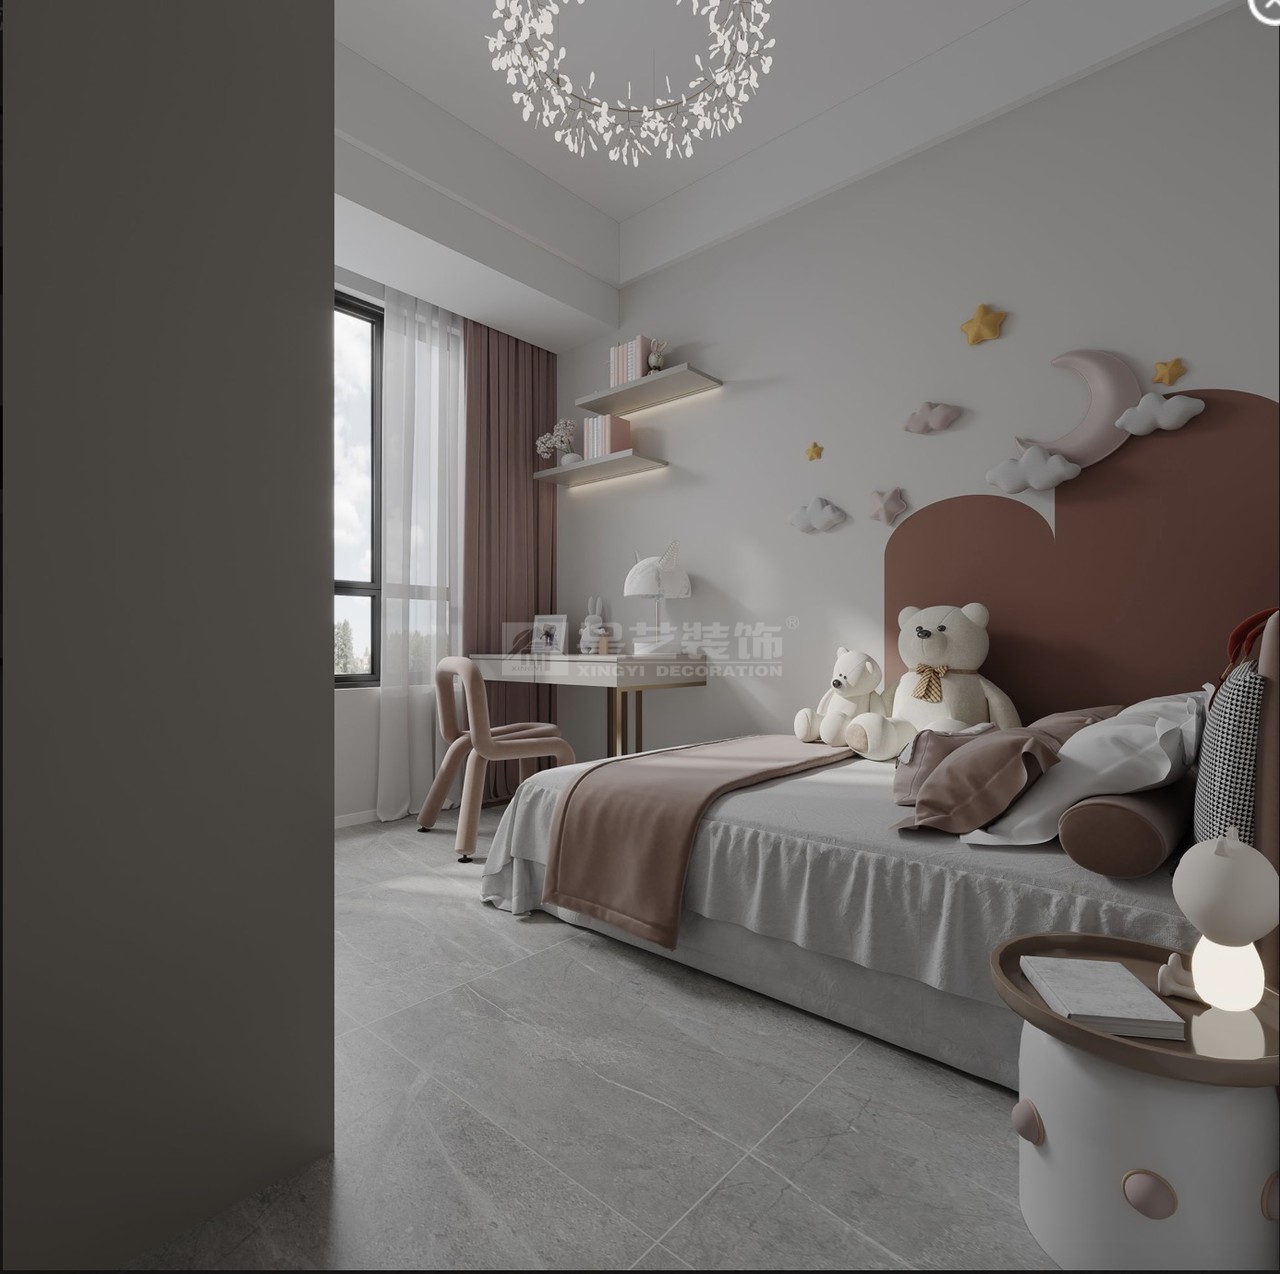 精心布置的可爱儿童房，自在活泼的舒适灵动感
明快轻松愉悦的色彩墙面设计
柔粉色的椅子与软饰
让空间带着丝丝梦幻，悠若安然